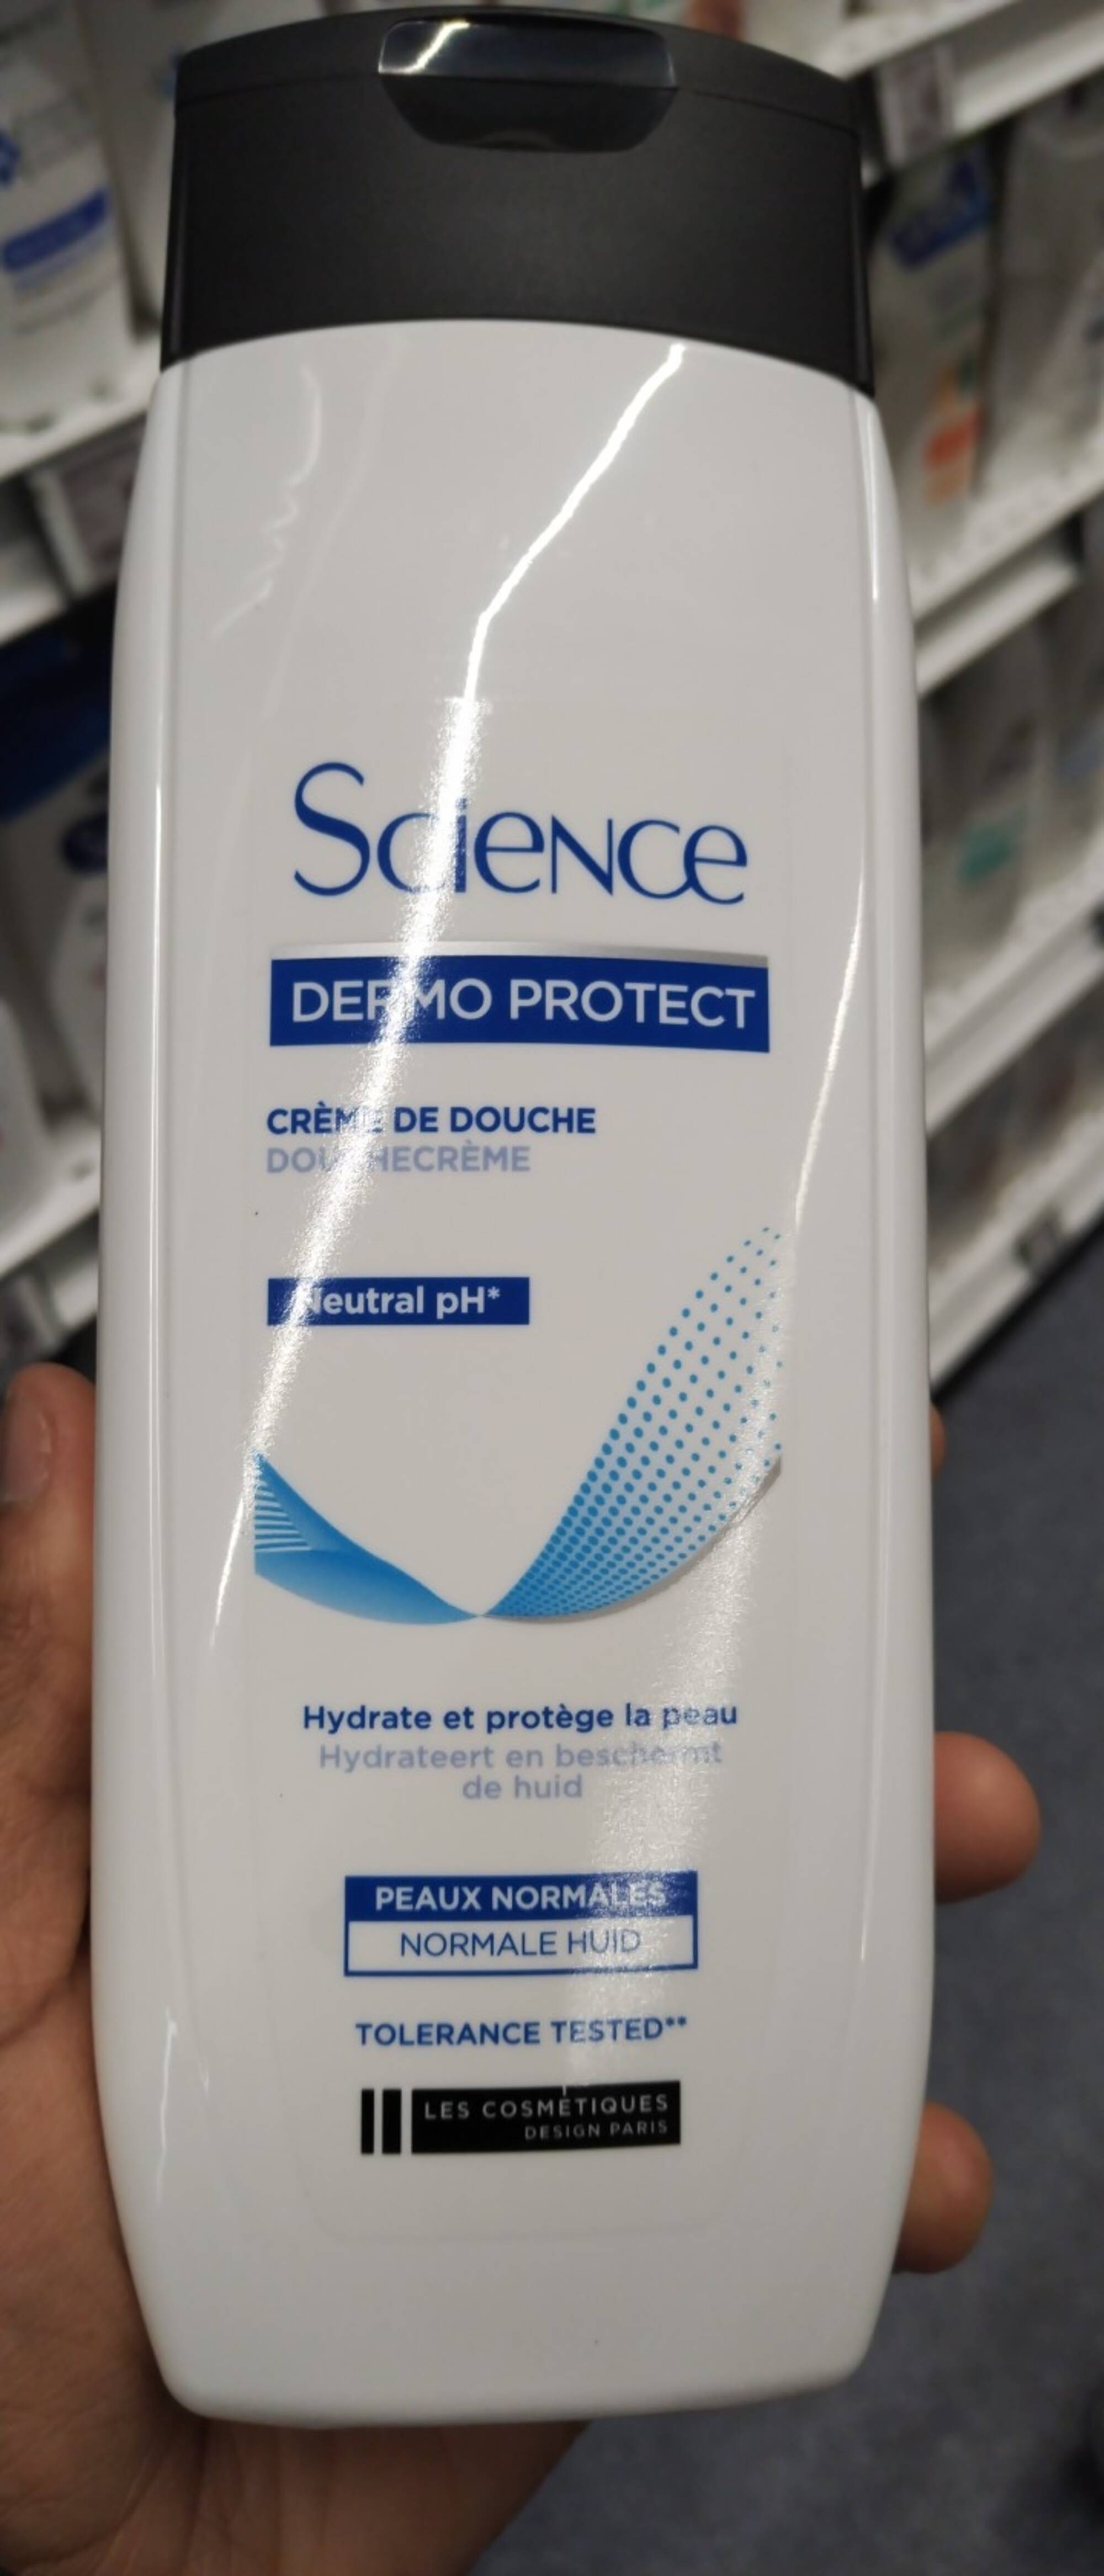 LES COSMÉTIQUES DESIGN PARIS - Science dermo protect - Crème de douche